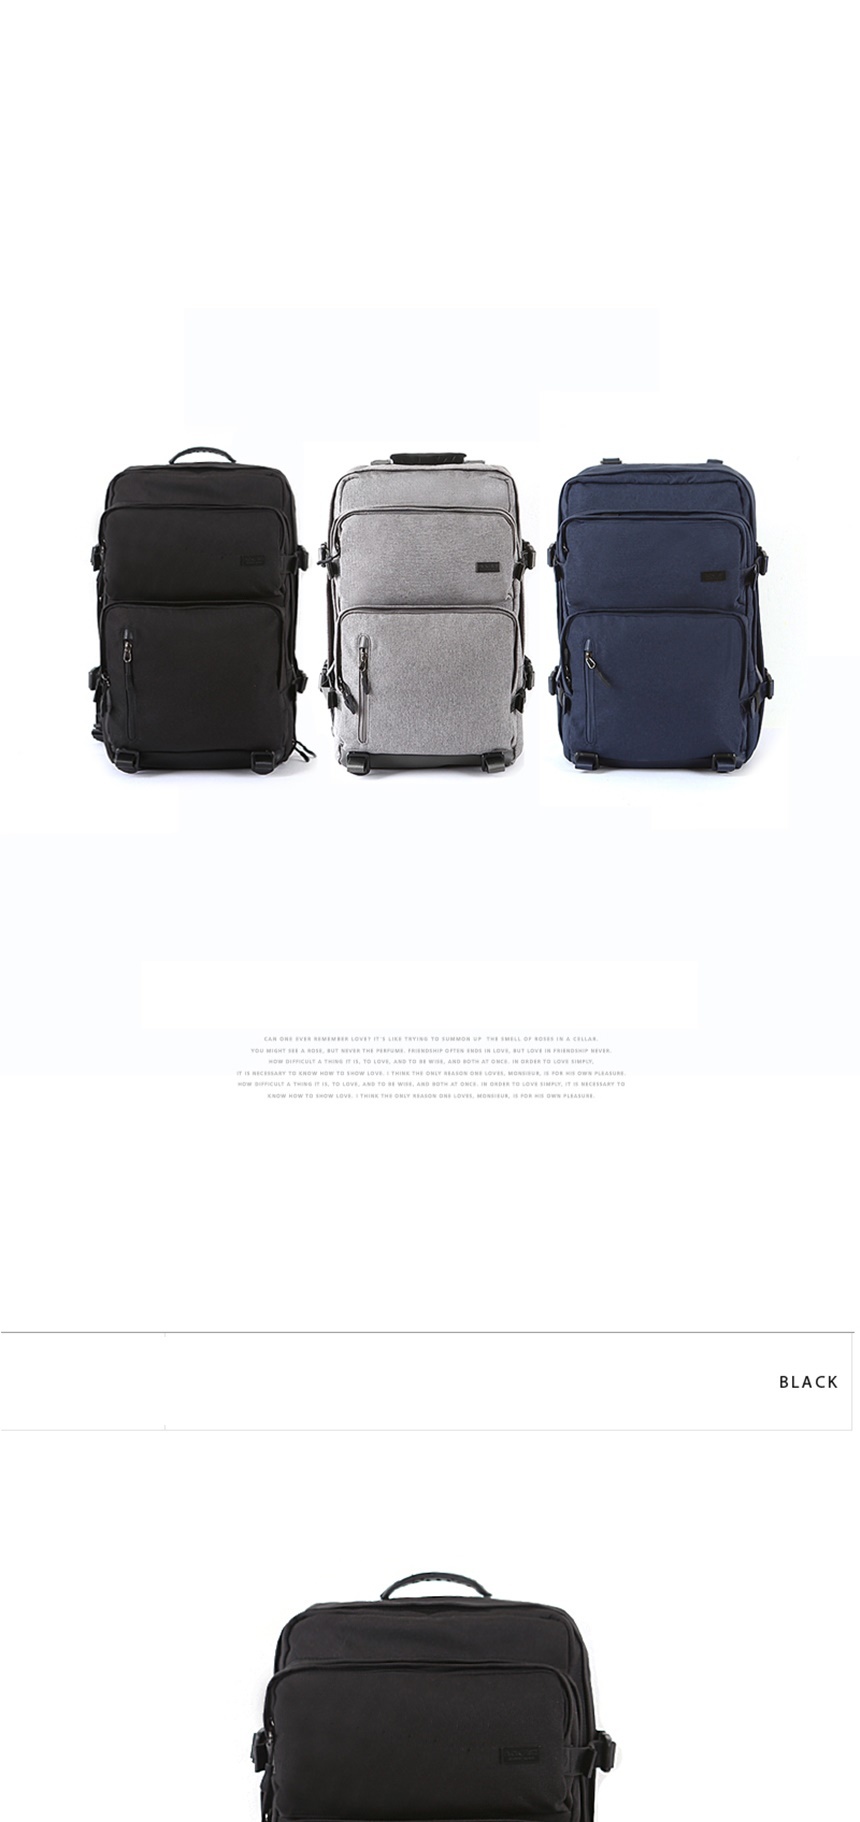 중학생가방,고등학생가방,노트북가방,중학생백팩